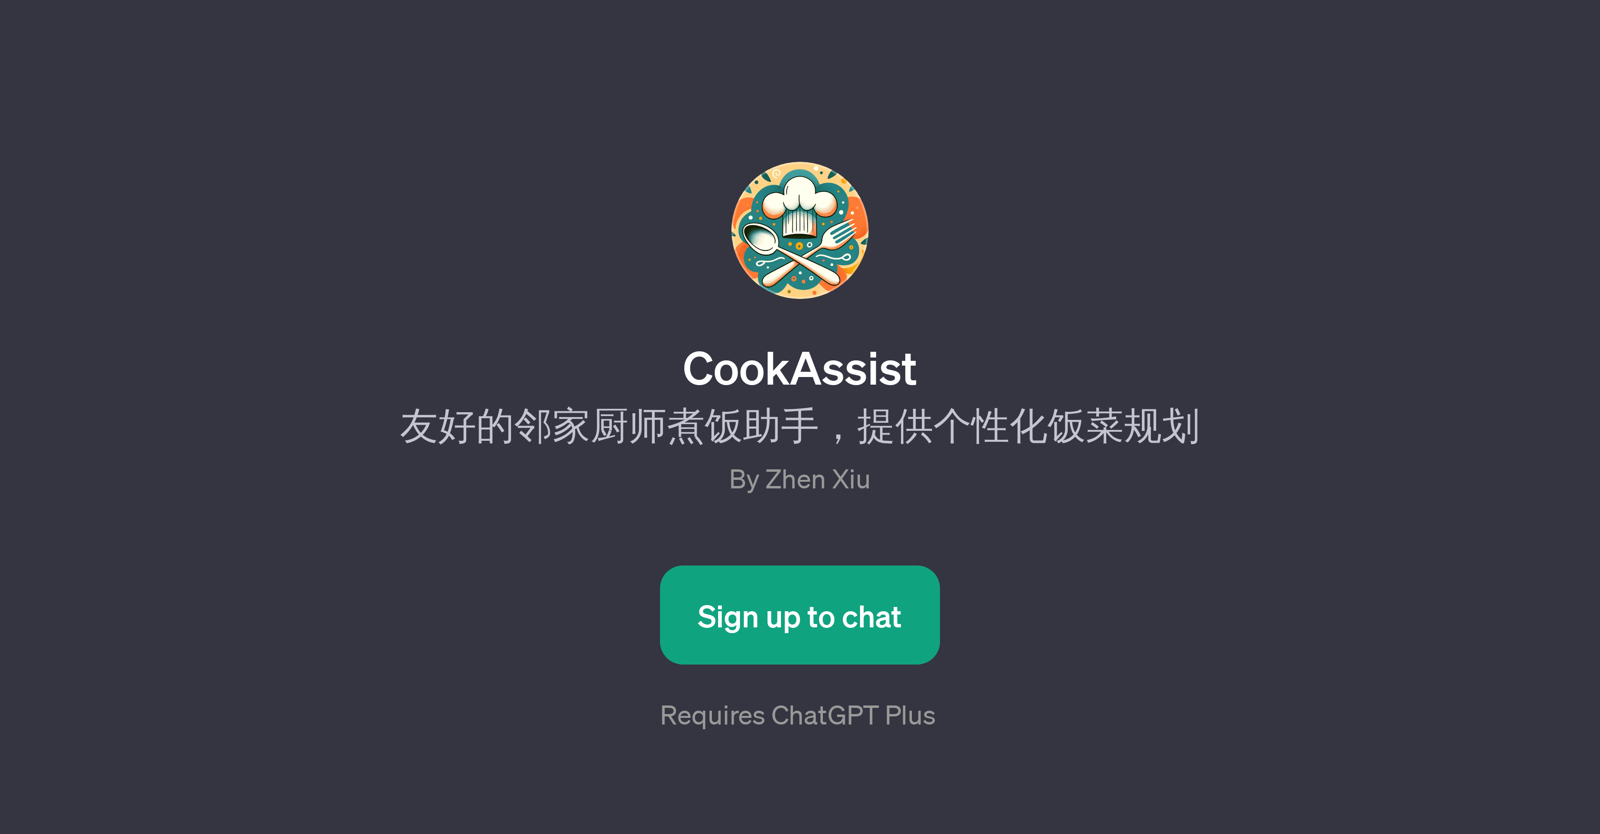 CookAssist website